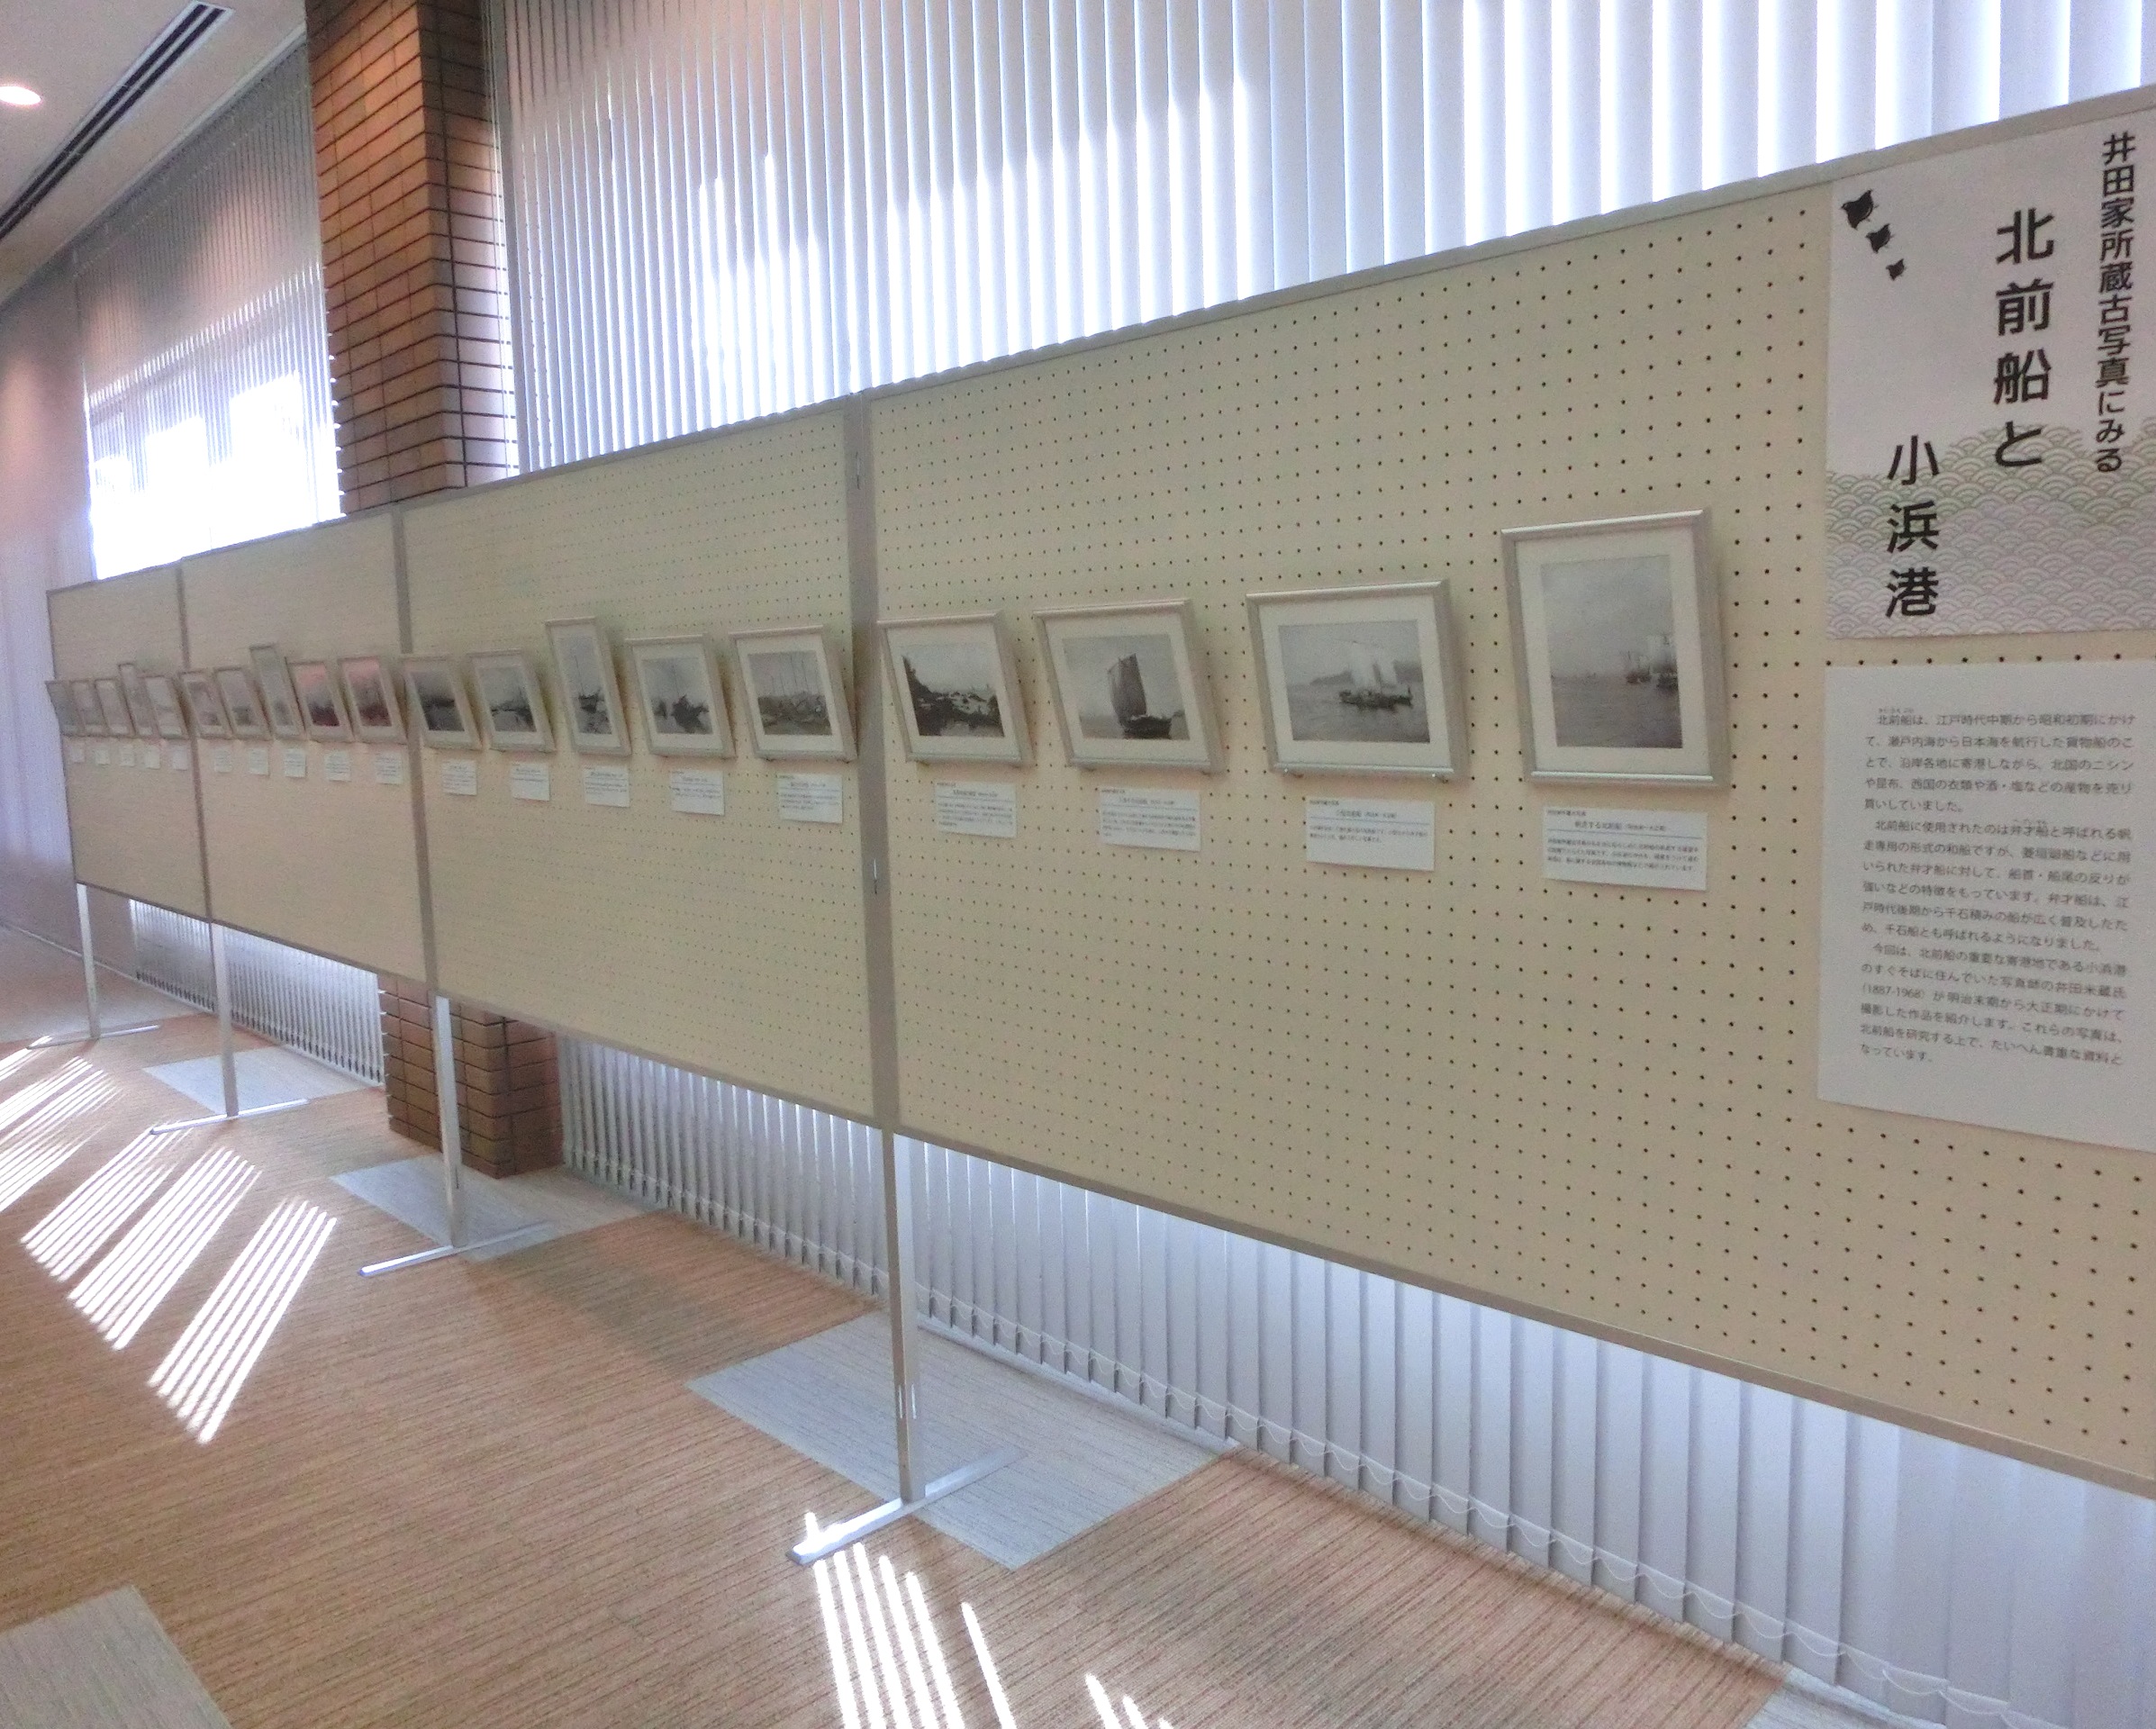 エントランス展示「井田家所蔵古写真にみる北前船と小浜港」